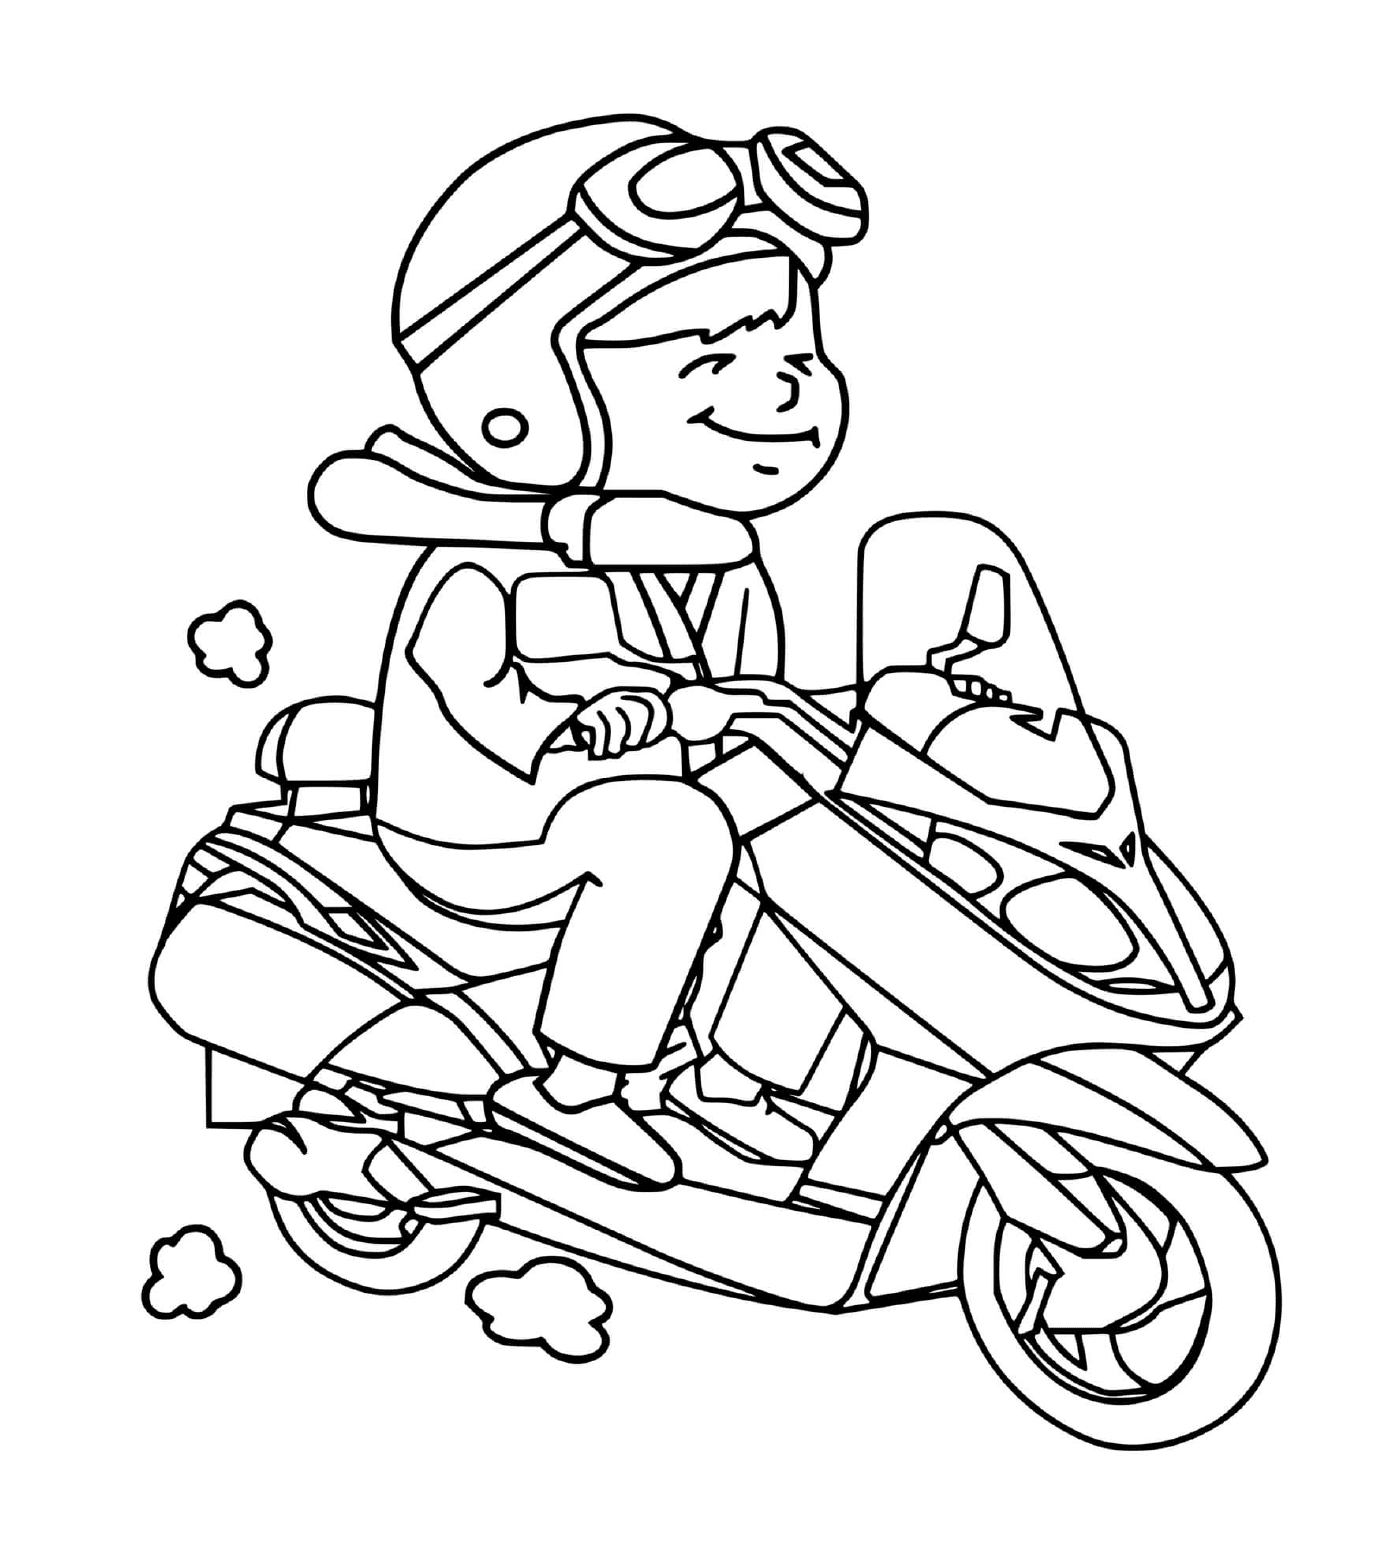  Ребёнок со своим мотоциклом 